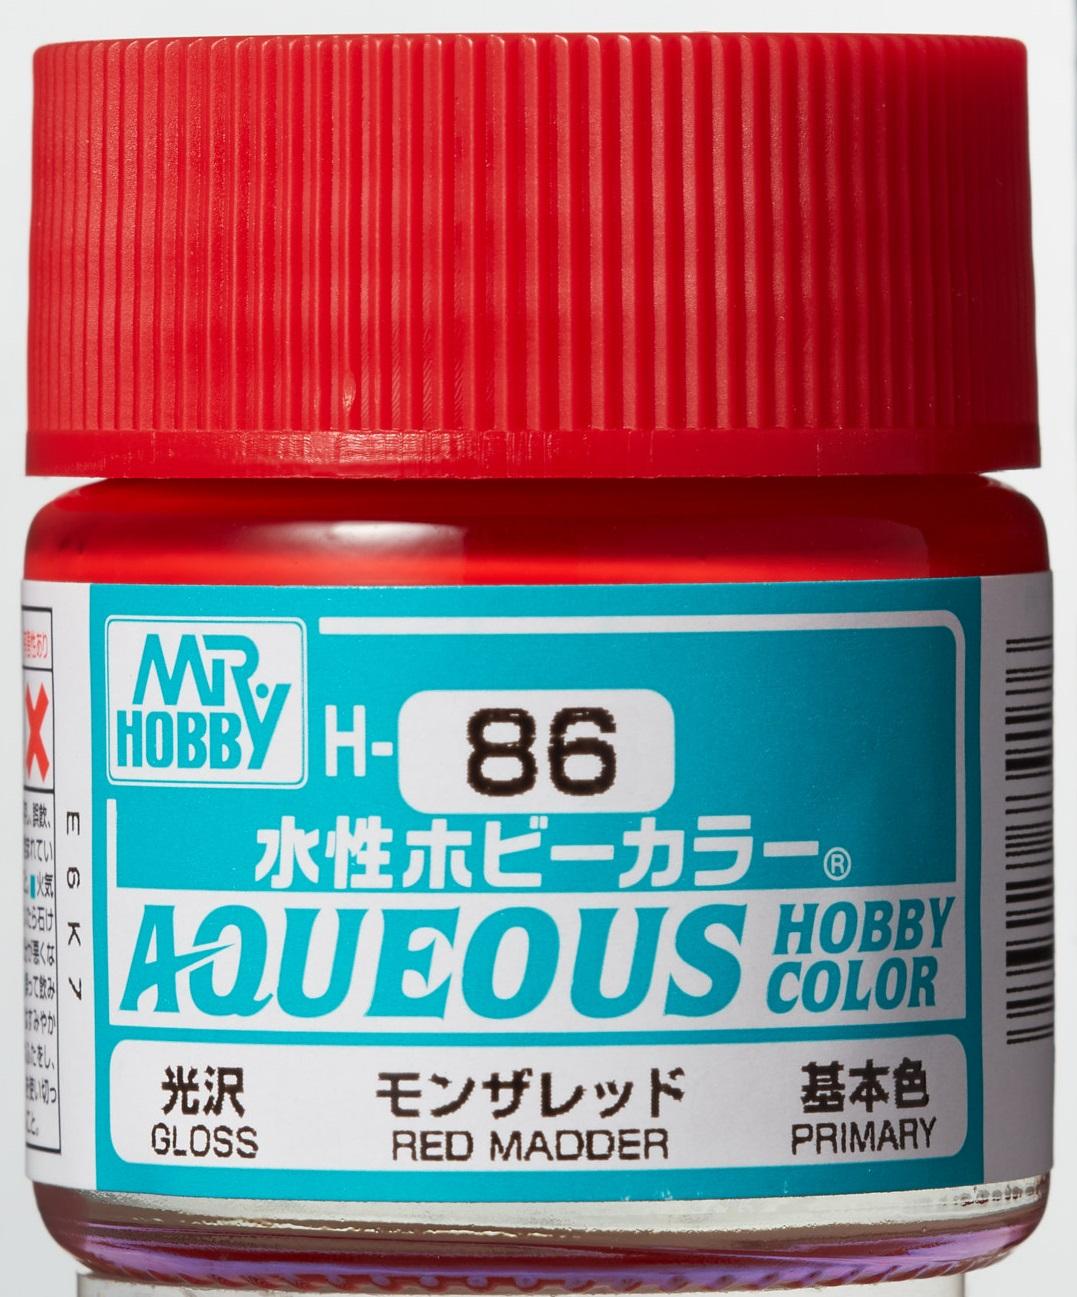 Mr. Hobby Aqueous Hobby Color H86 Gloss Madder Red 10ml Bottle